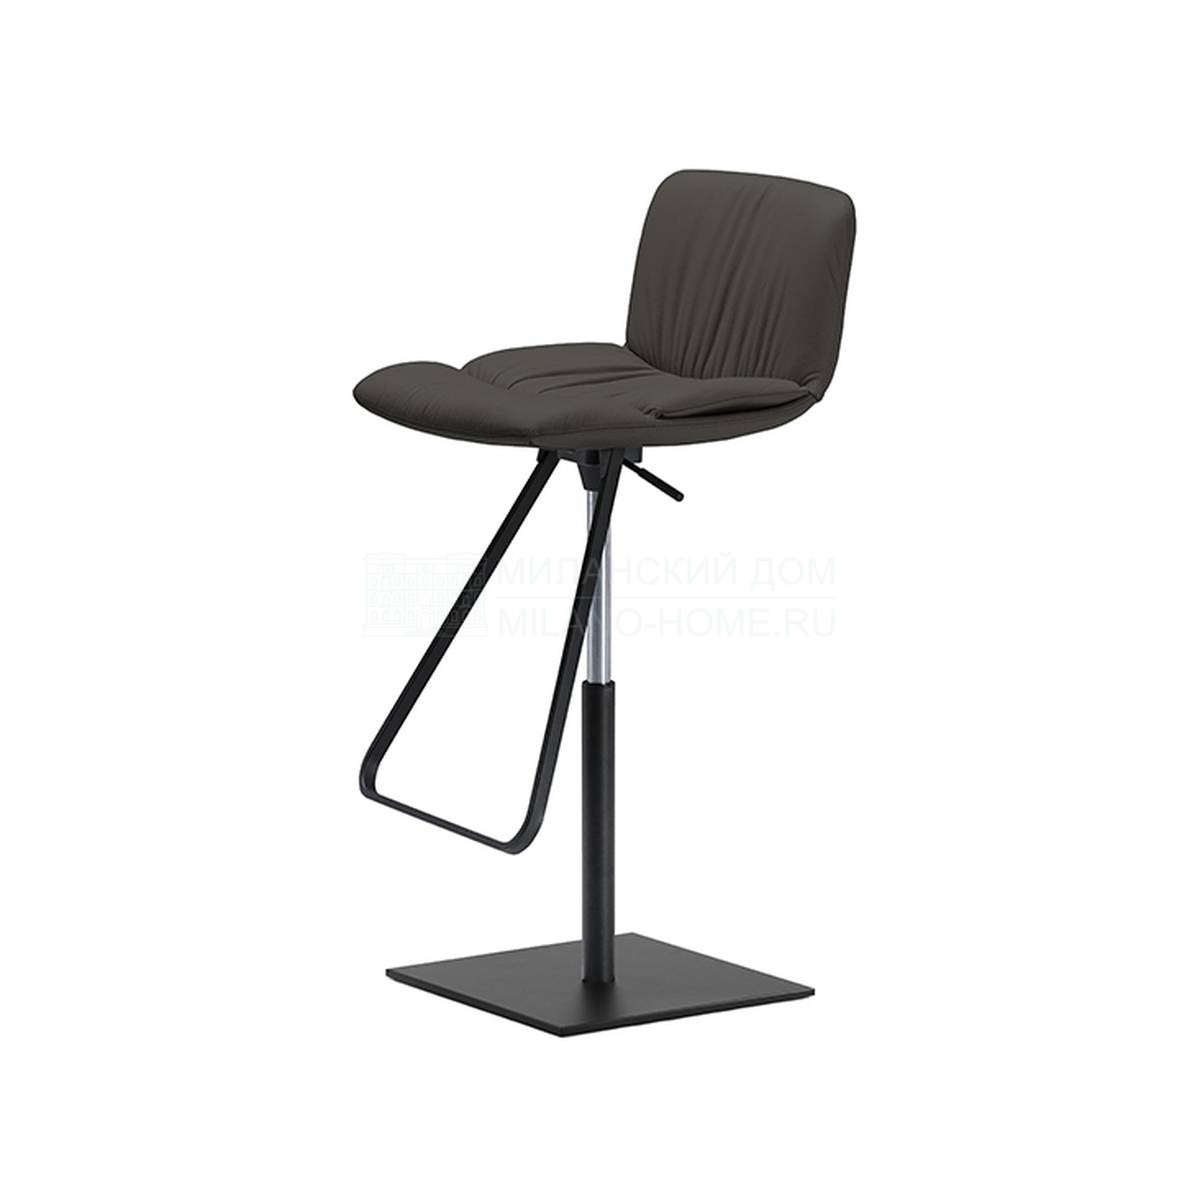 Барный стул Axel bar stool из Италии фабрики CATTELAN ITALIA